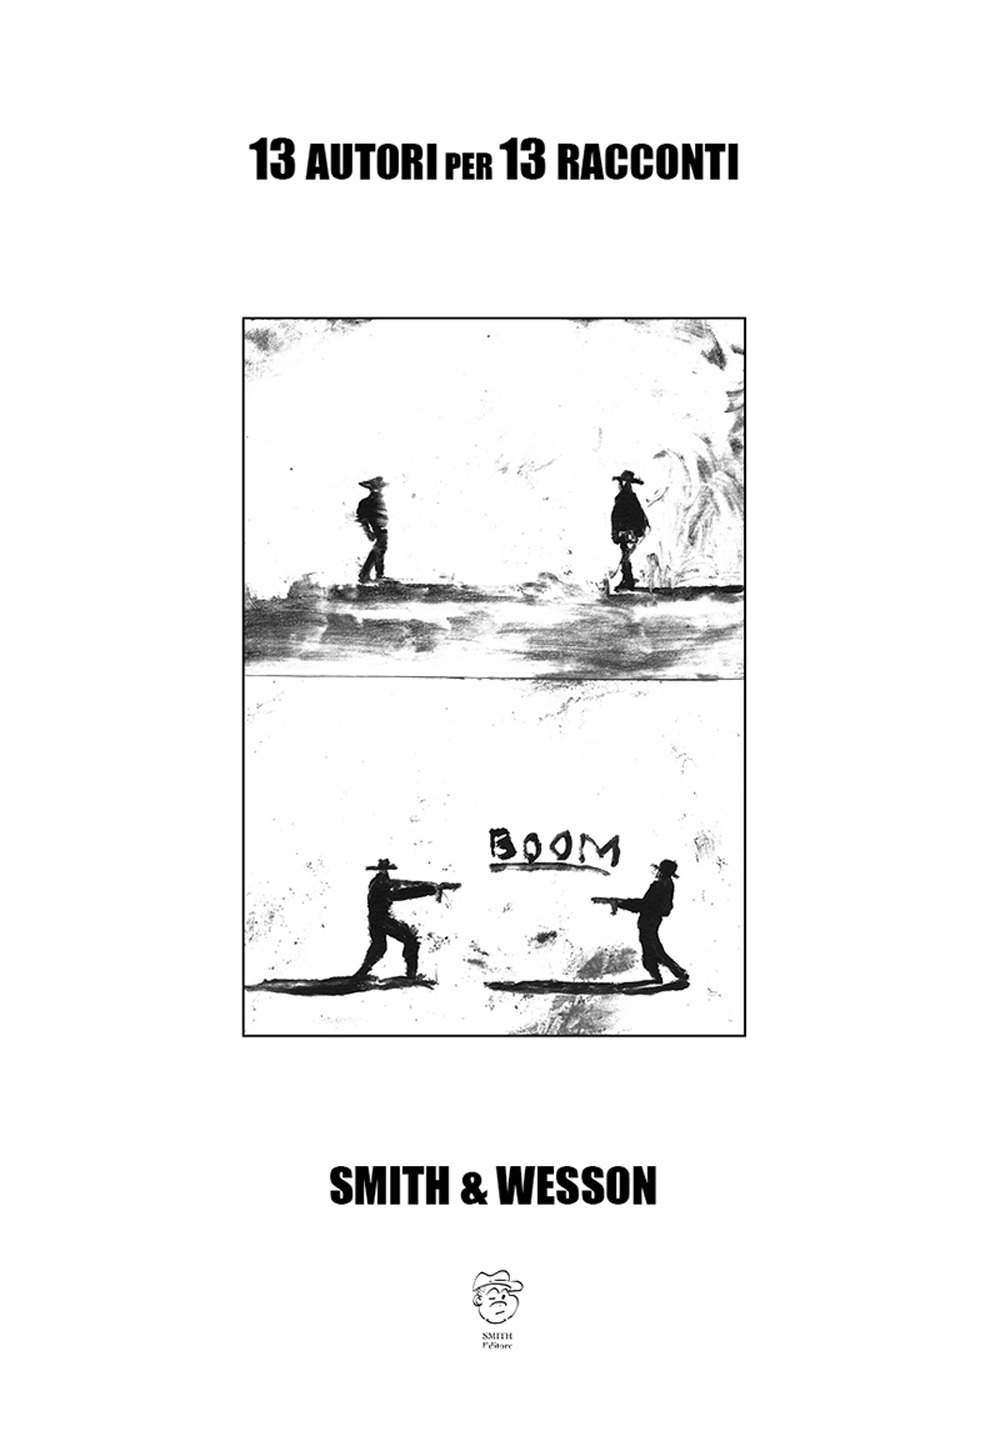 Smith & Wesson. 13 autori per 13 racconti